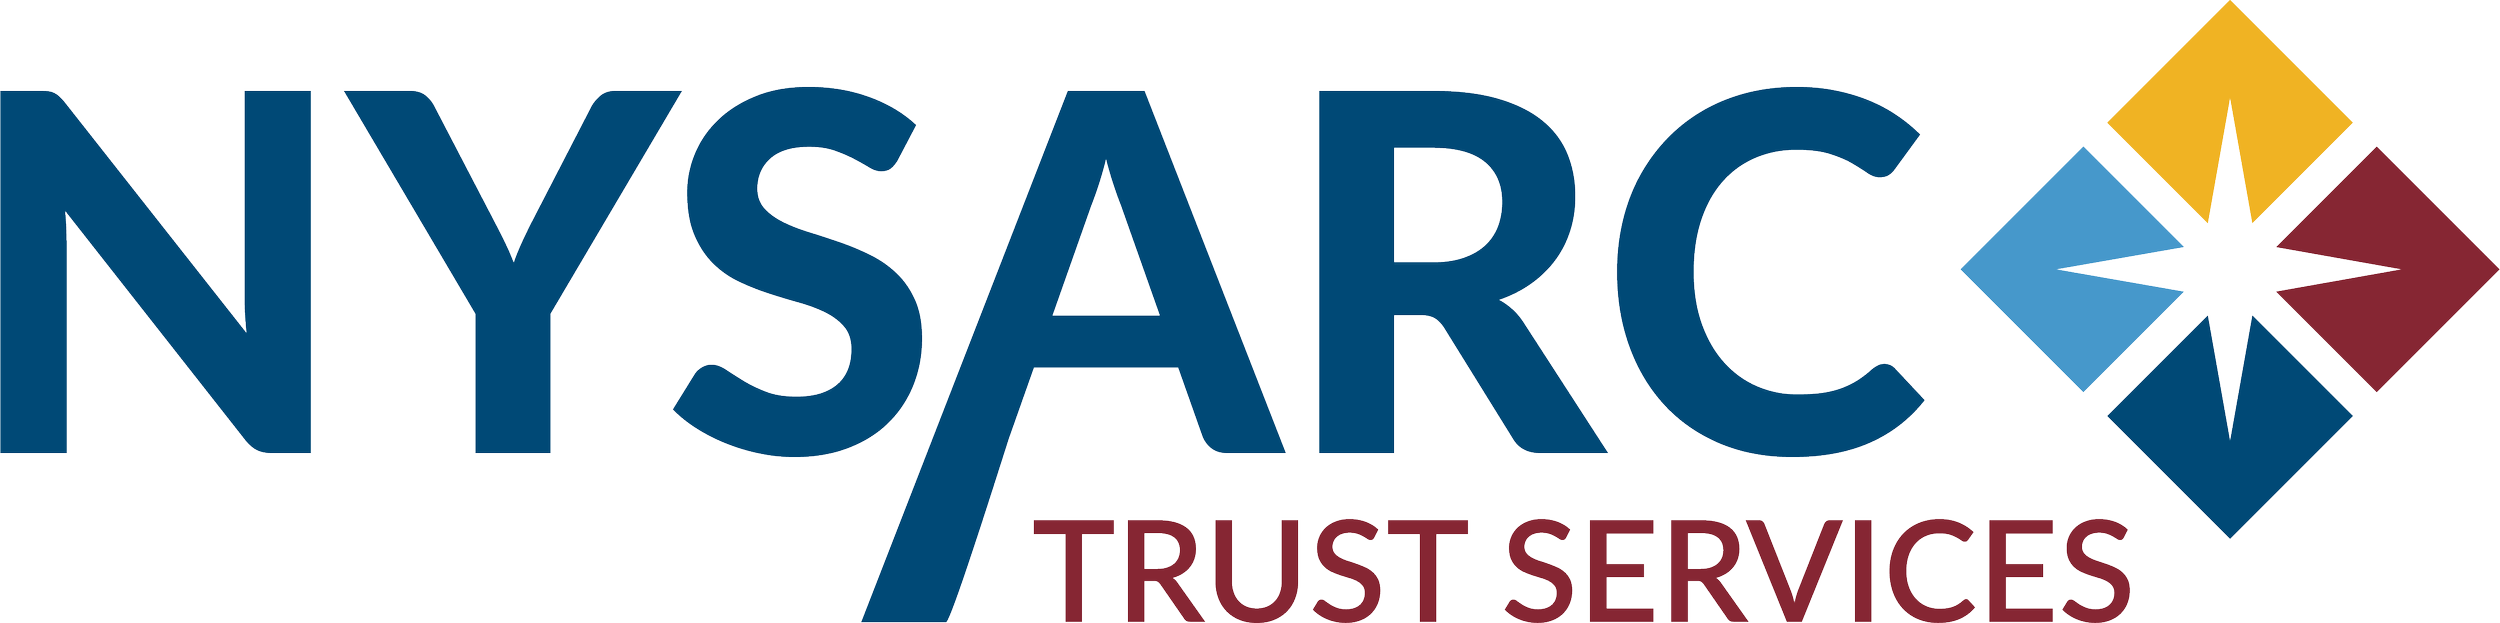 NYSARC Logo - WEB DIGITAL.png